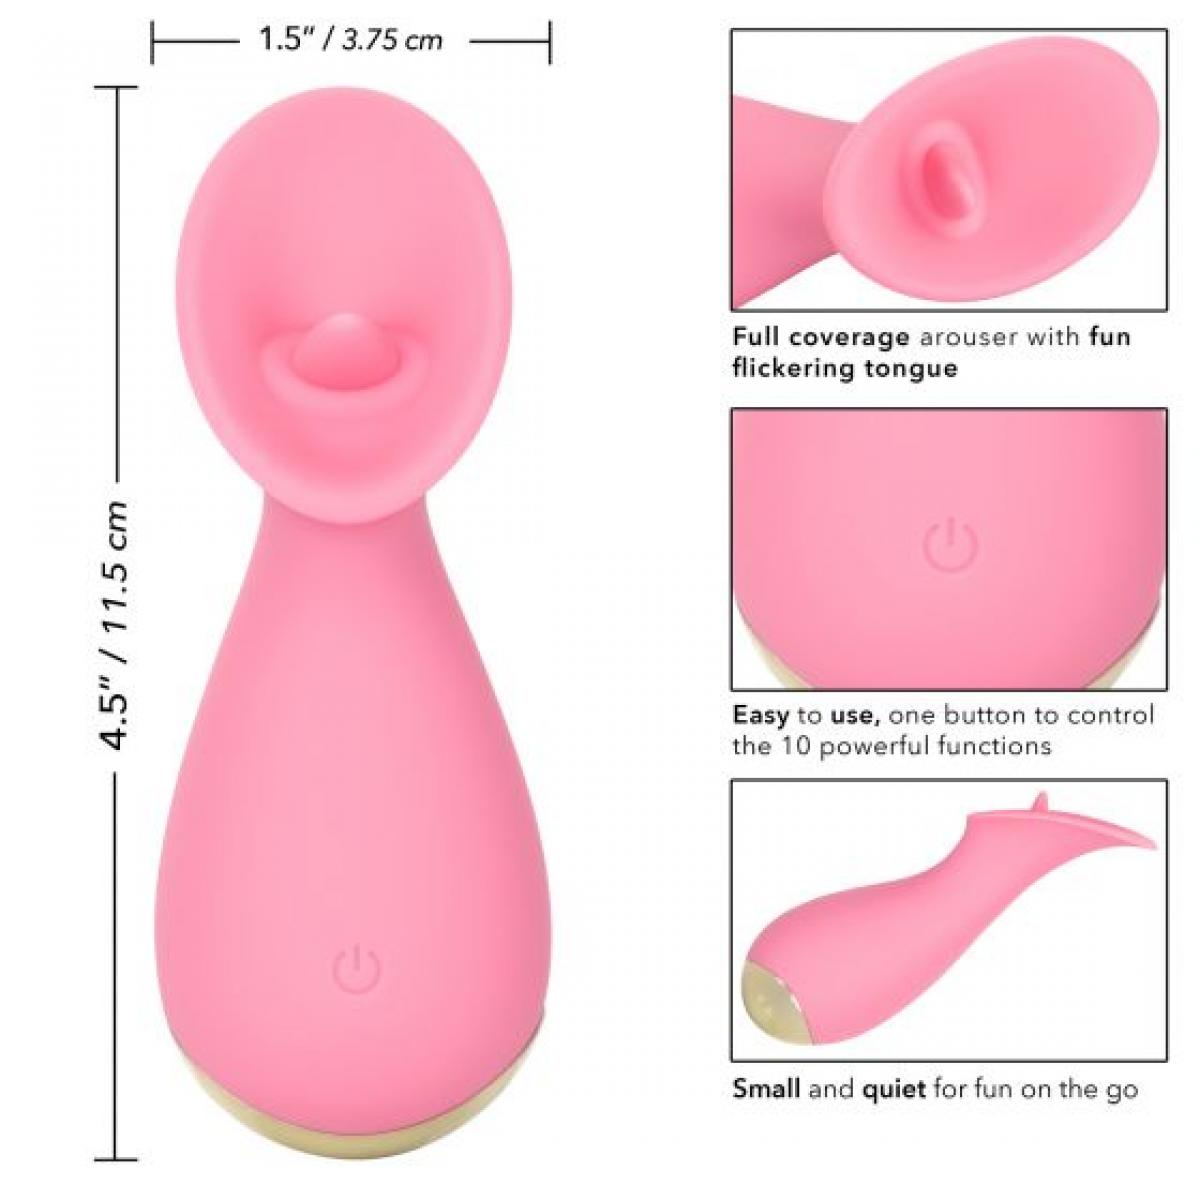 Розовый мини-вибромассажер #TickleMe - 11,5 см.